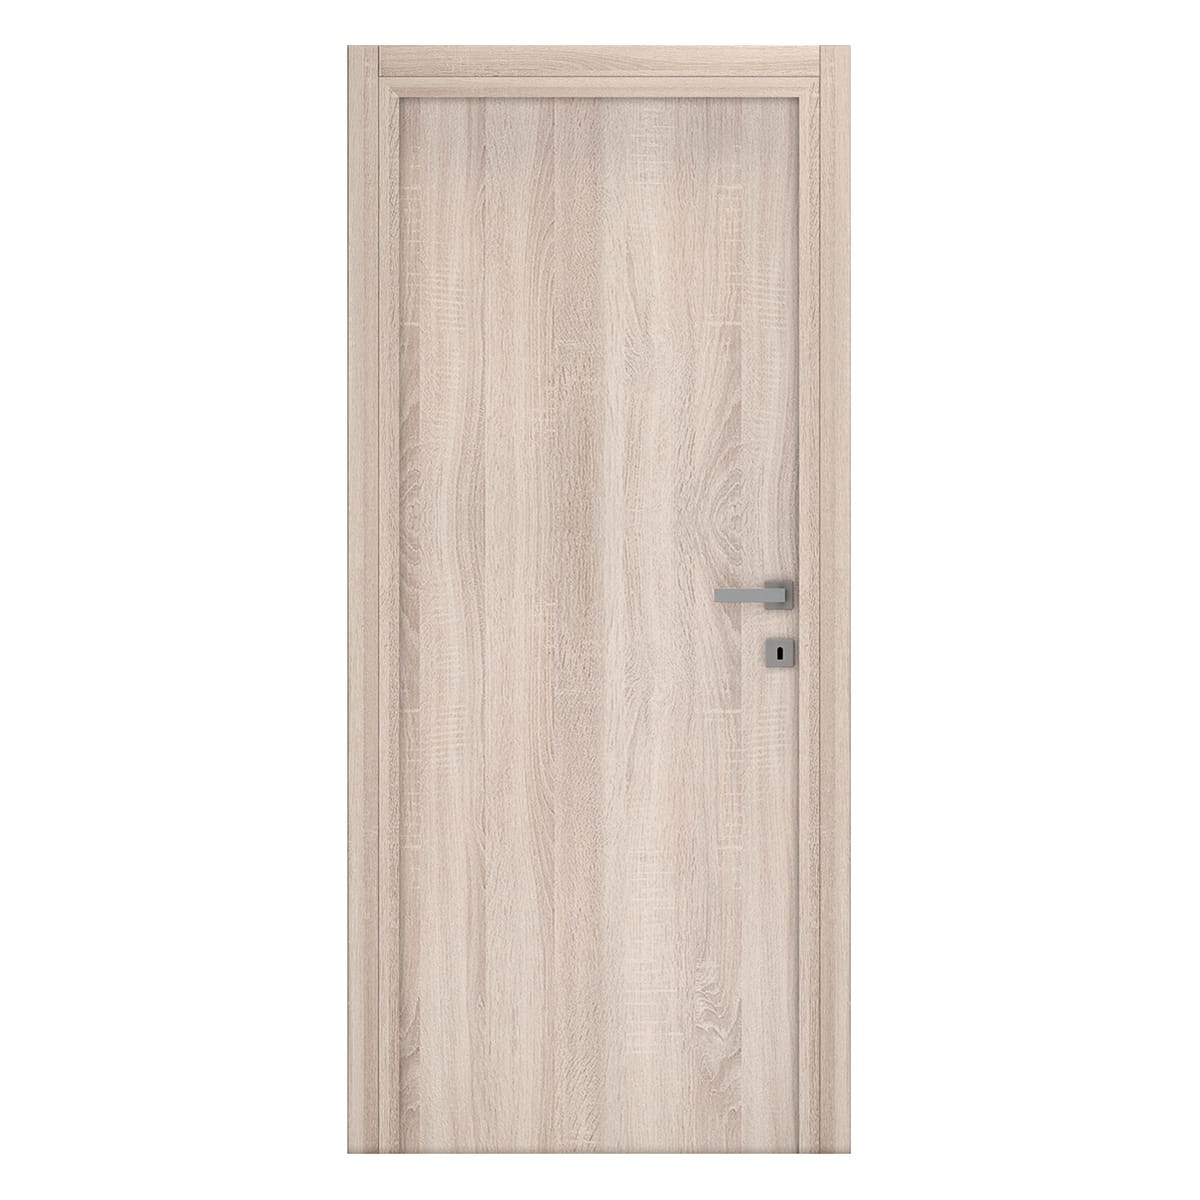 HINGED BRUSH DOOR 60X210 COGNAC